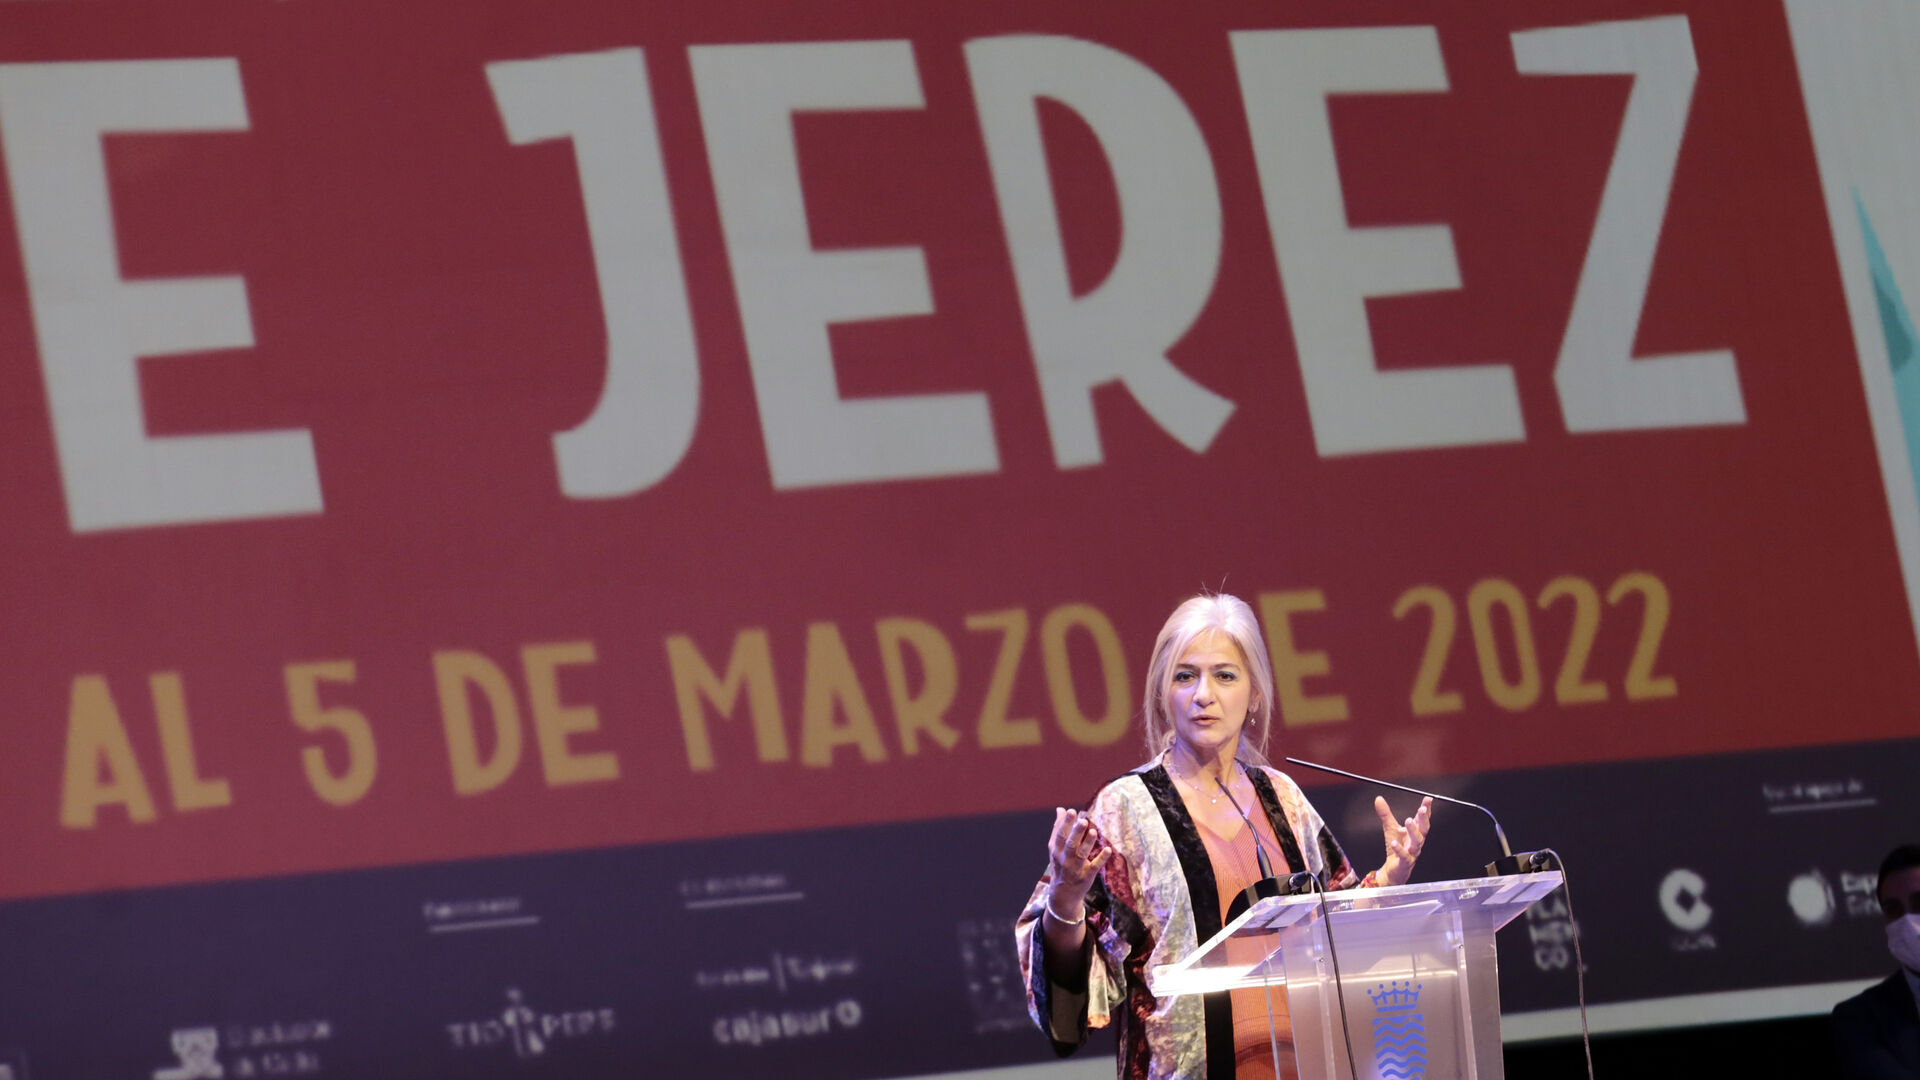 Im&aacute;genes de la presentaci&oacute;n del Festival de Jerez 2022